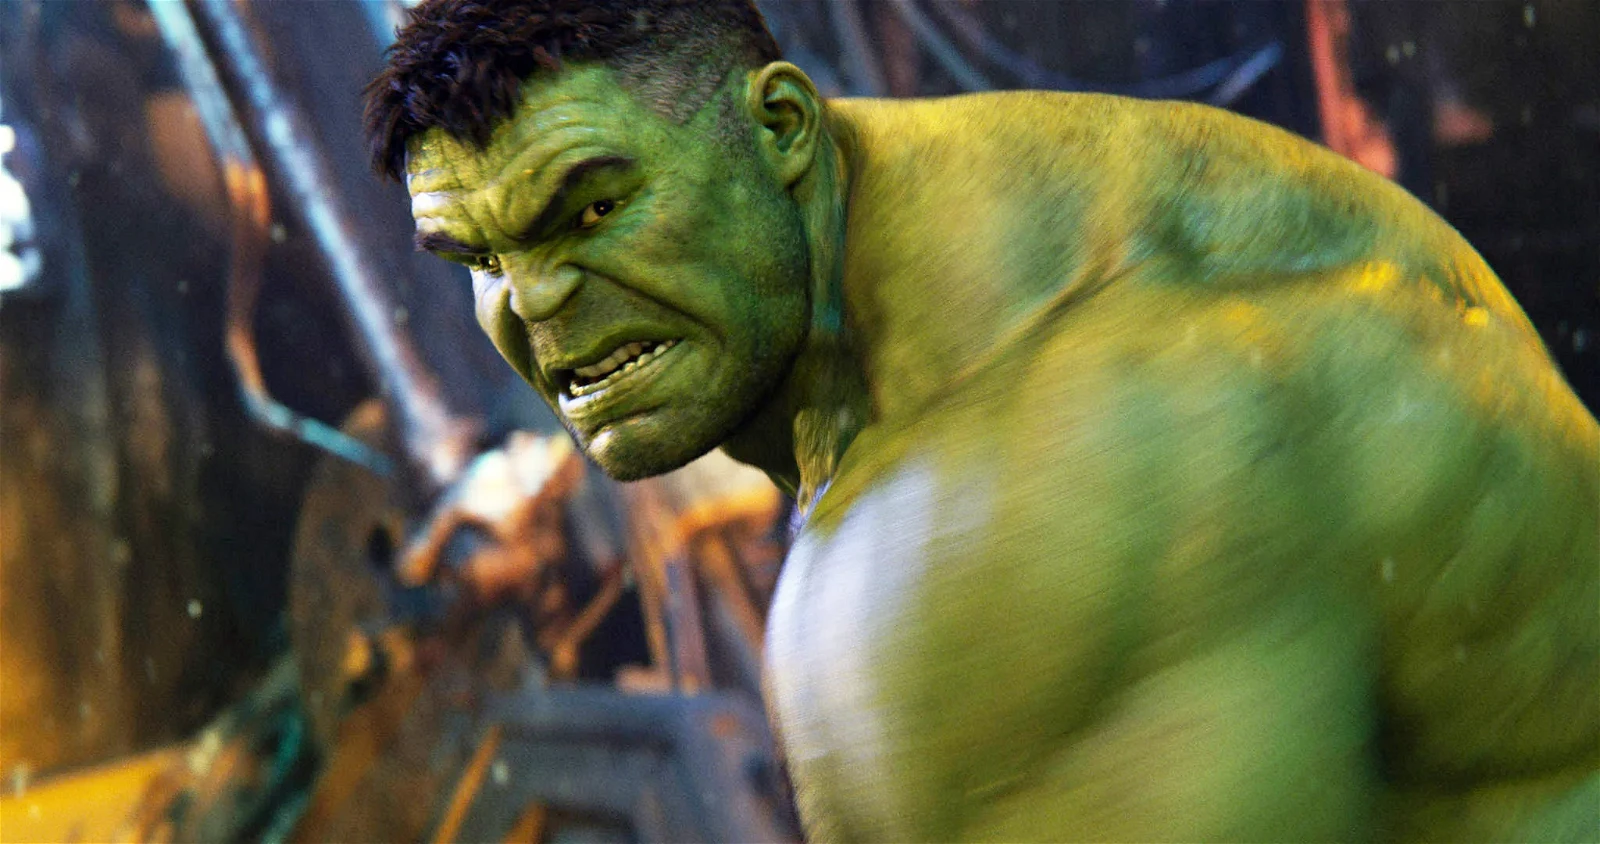 The Hulk in the MCU